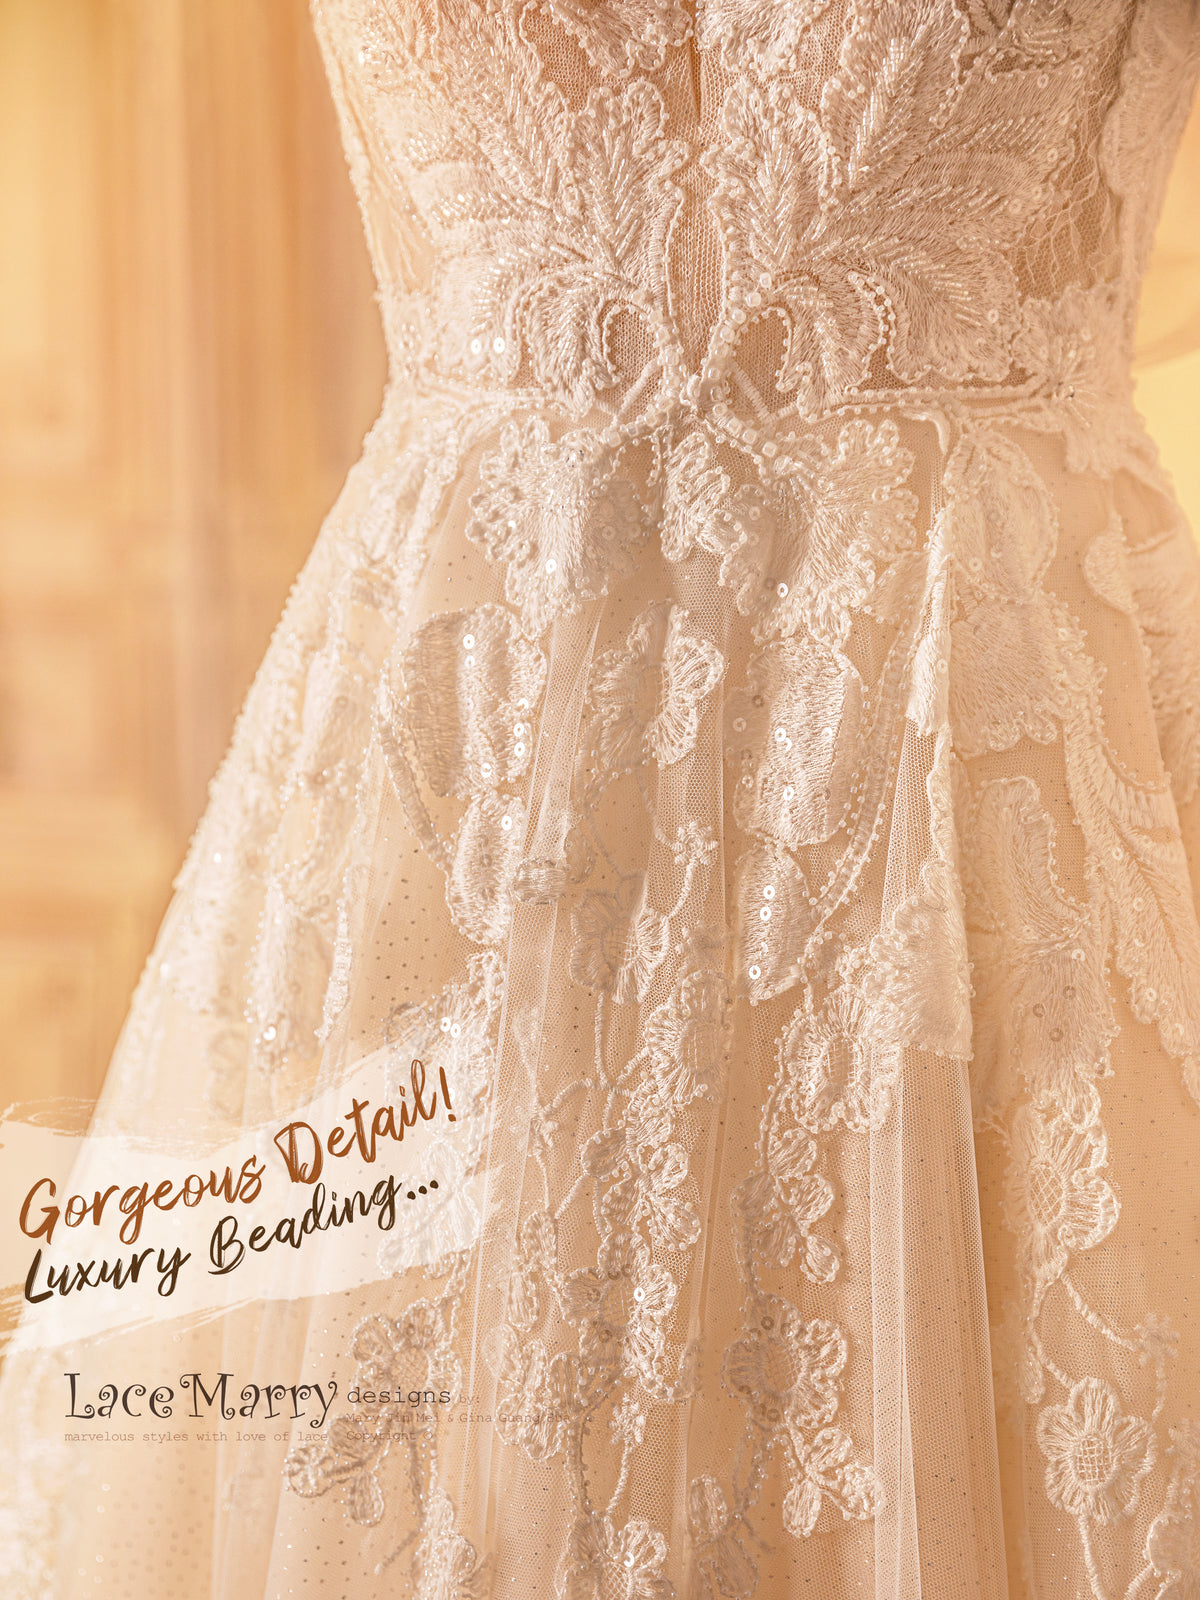 Amazing Lace and Beading Wedding Dress